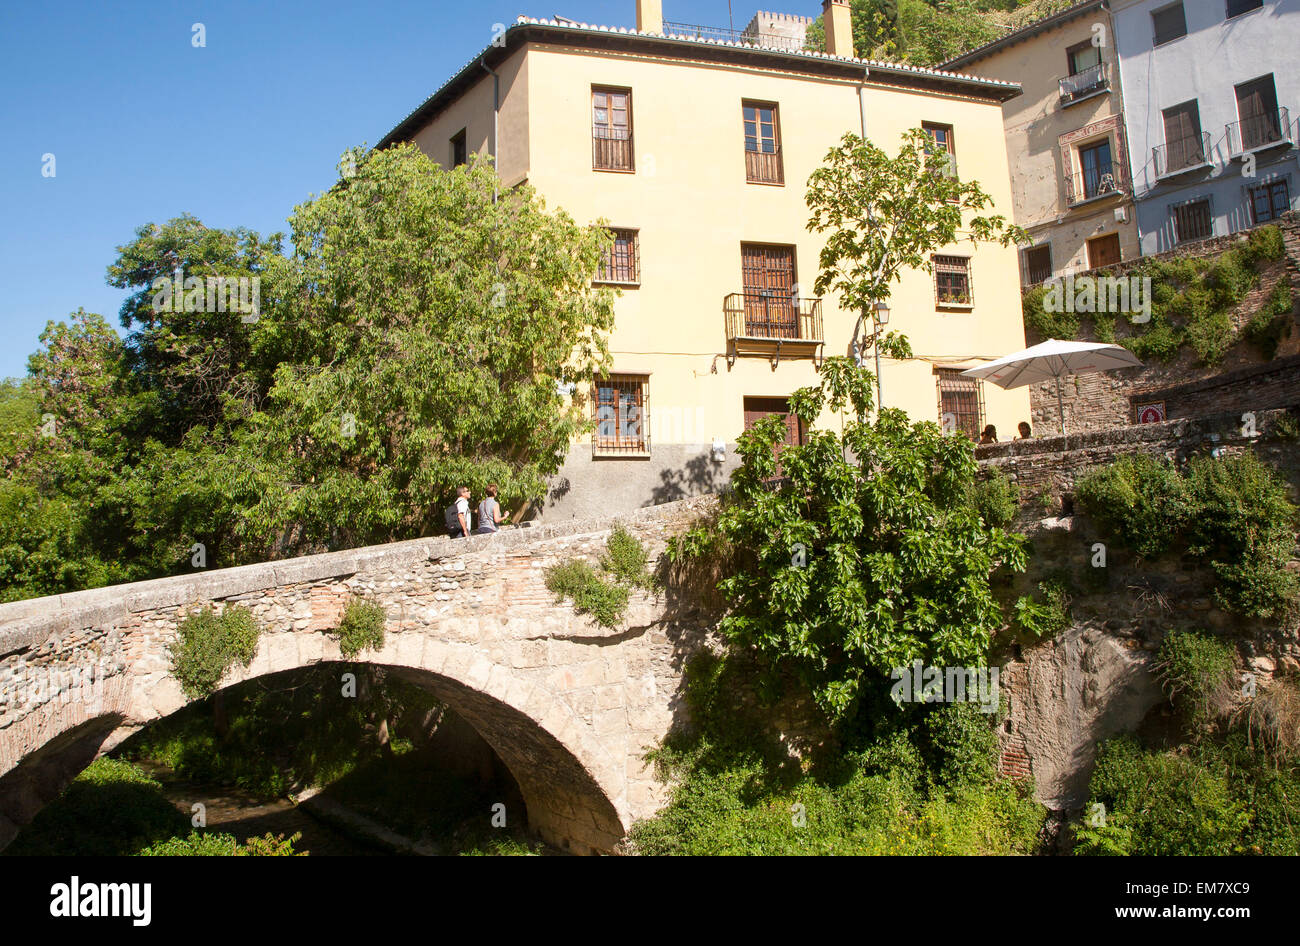 Historic stone bridge crossing the River Rio Darro, Granada, Spain Stock Photo